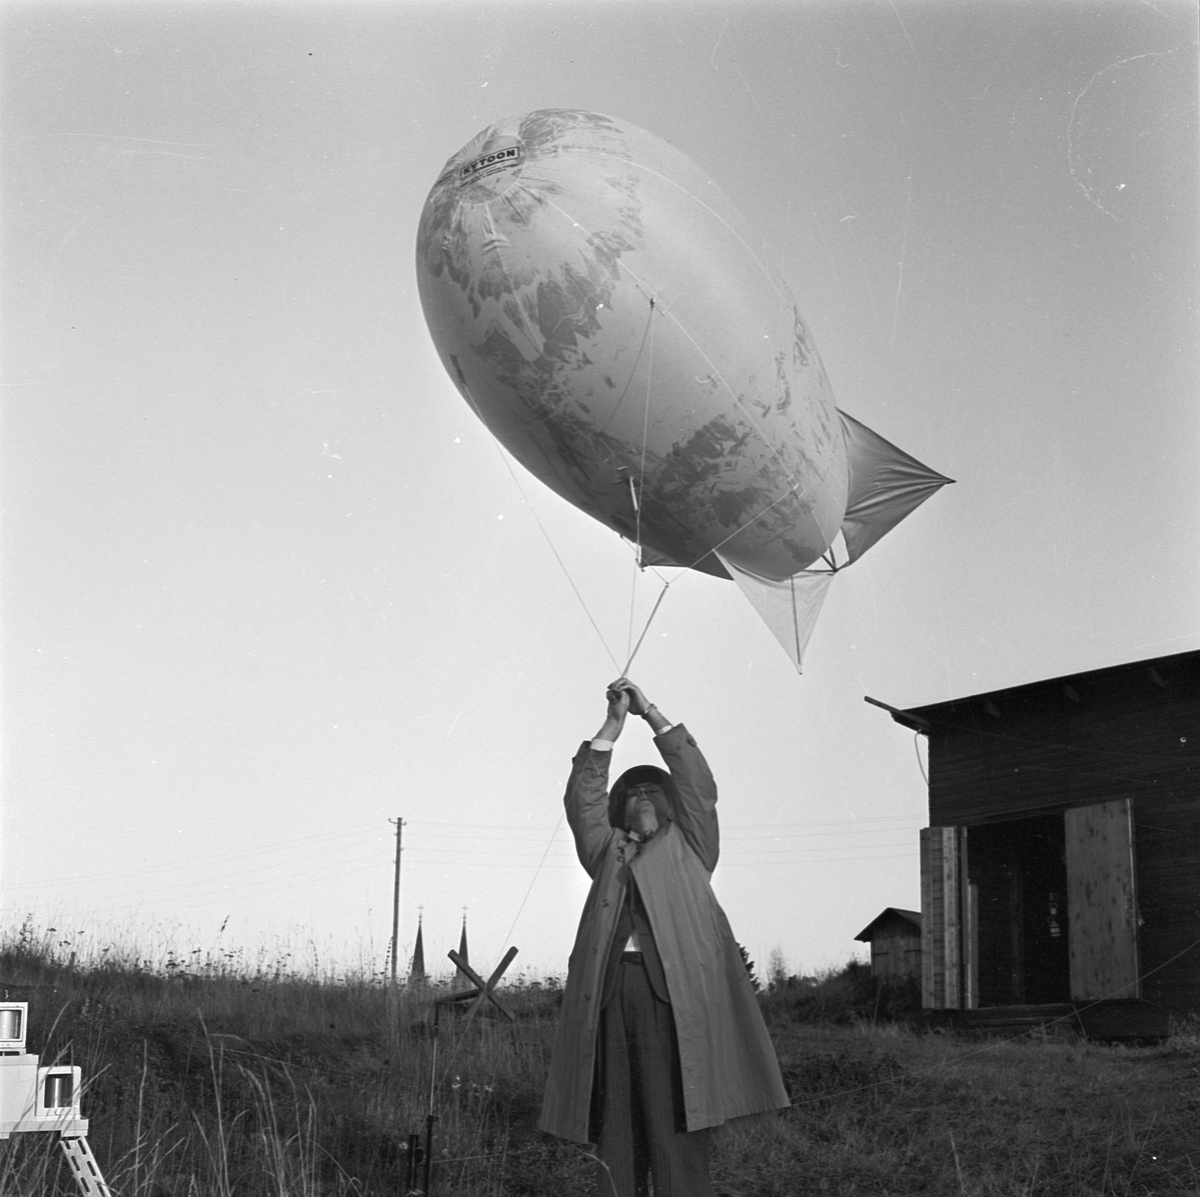 Meteorologiska institutionen, assisten Morales med ballong och mätinstrument, Uppsala 1956